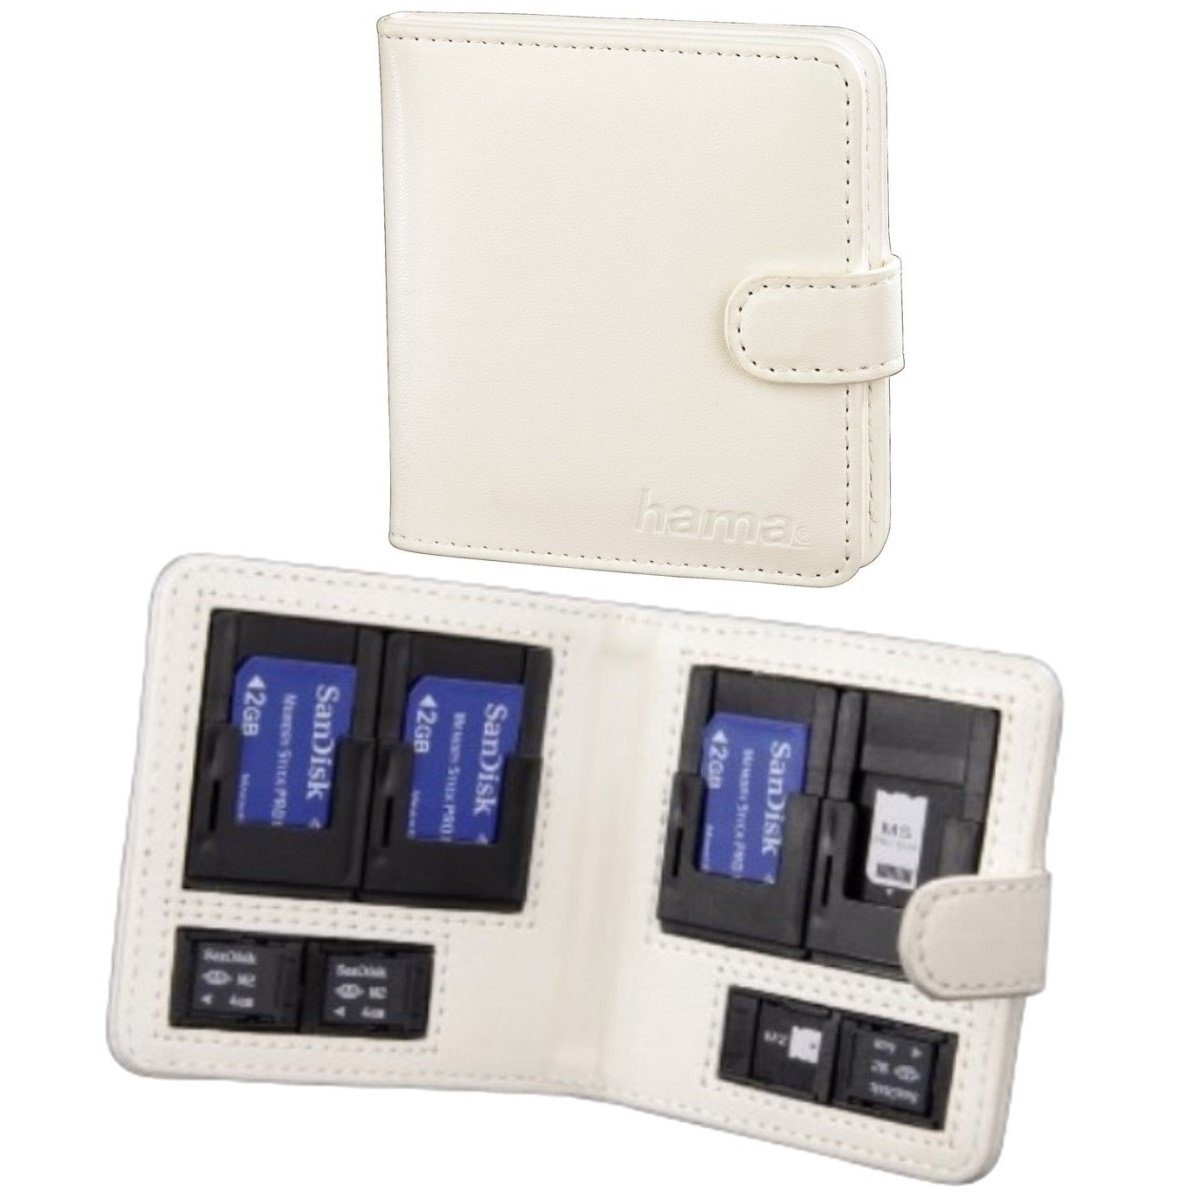 Hama Speicherkarten-Tasche für Sony Memory-Stick (Anti-Kratz) Speicherkarte Weiß